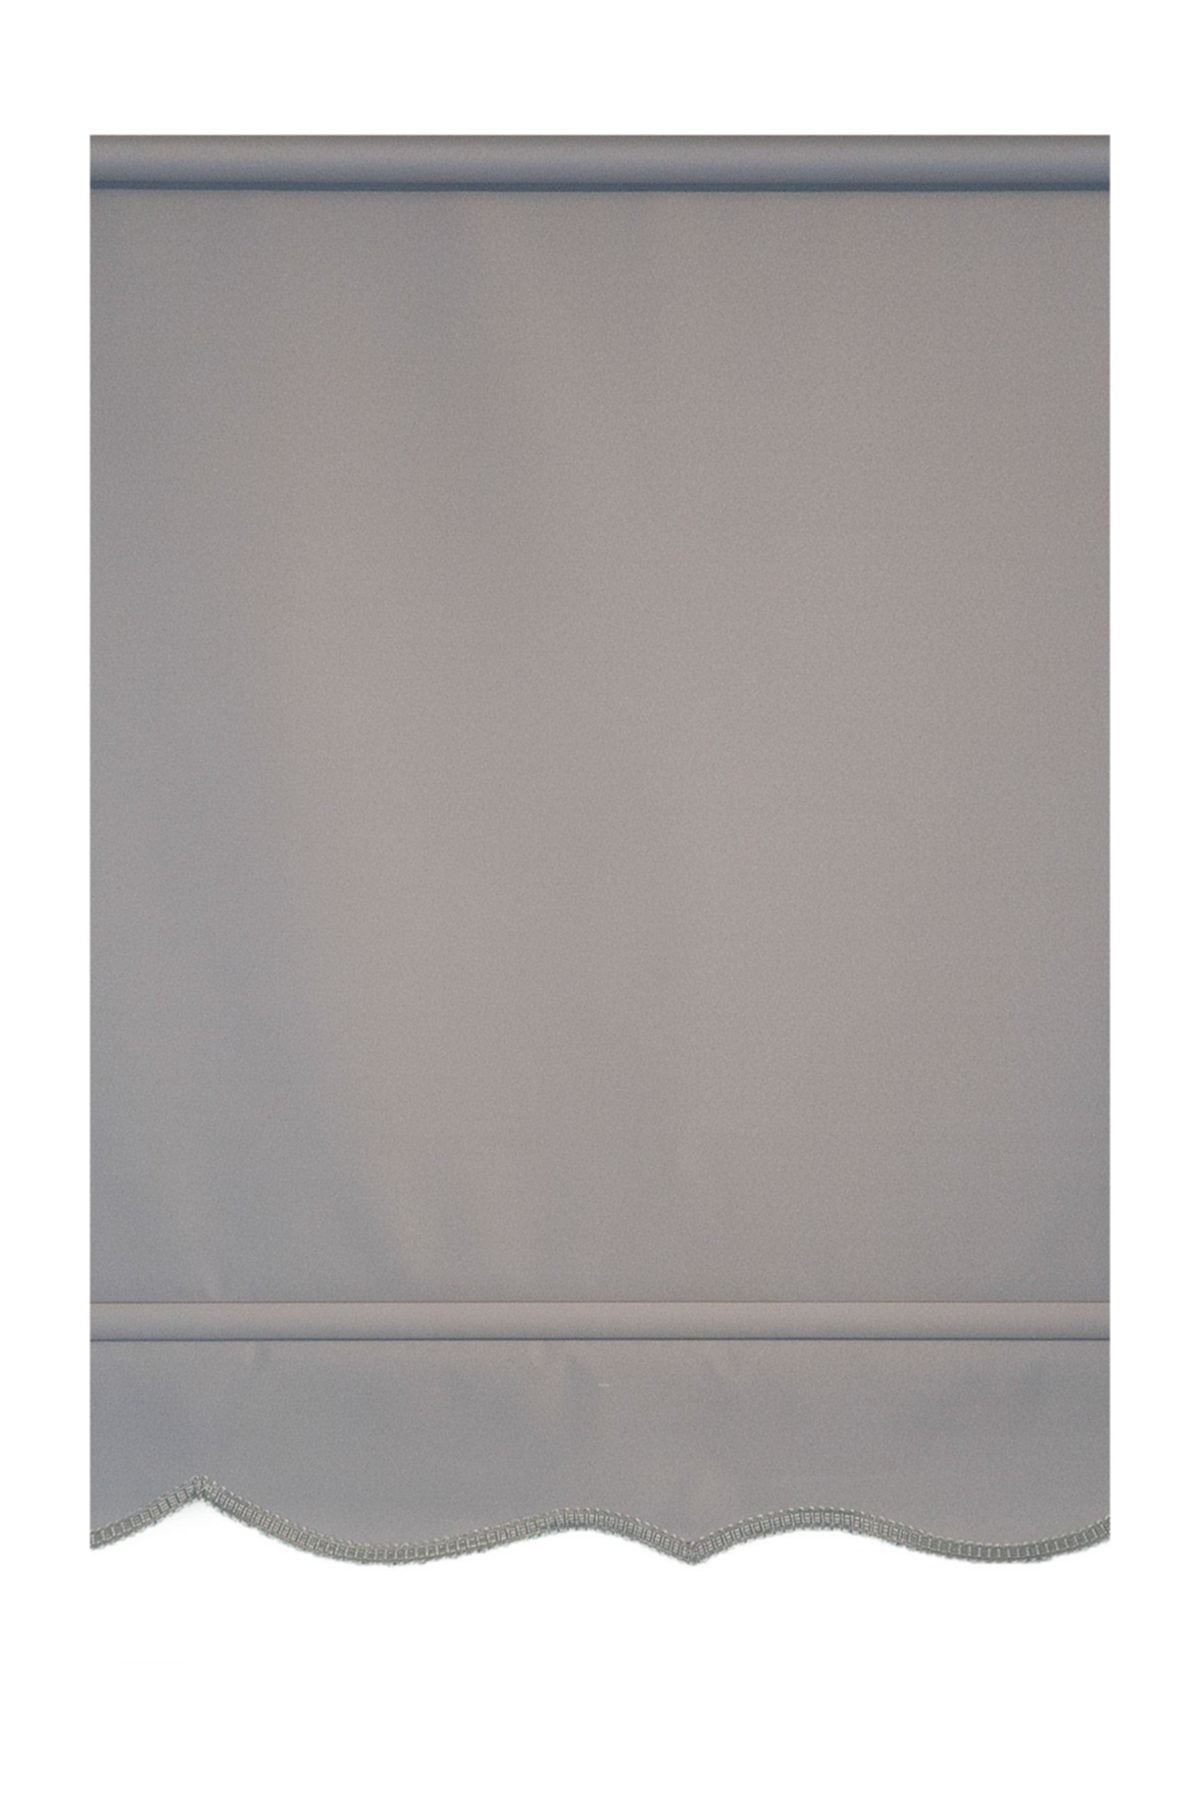 Efor Polyester Serisi Koyu Gri 200x200 cm